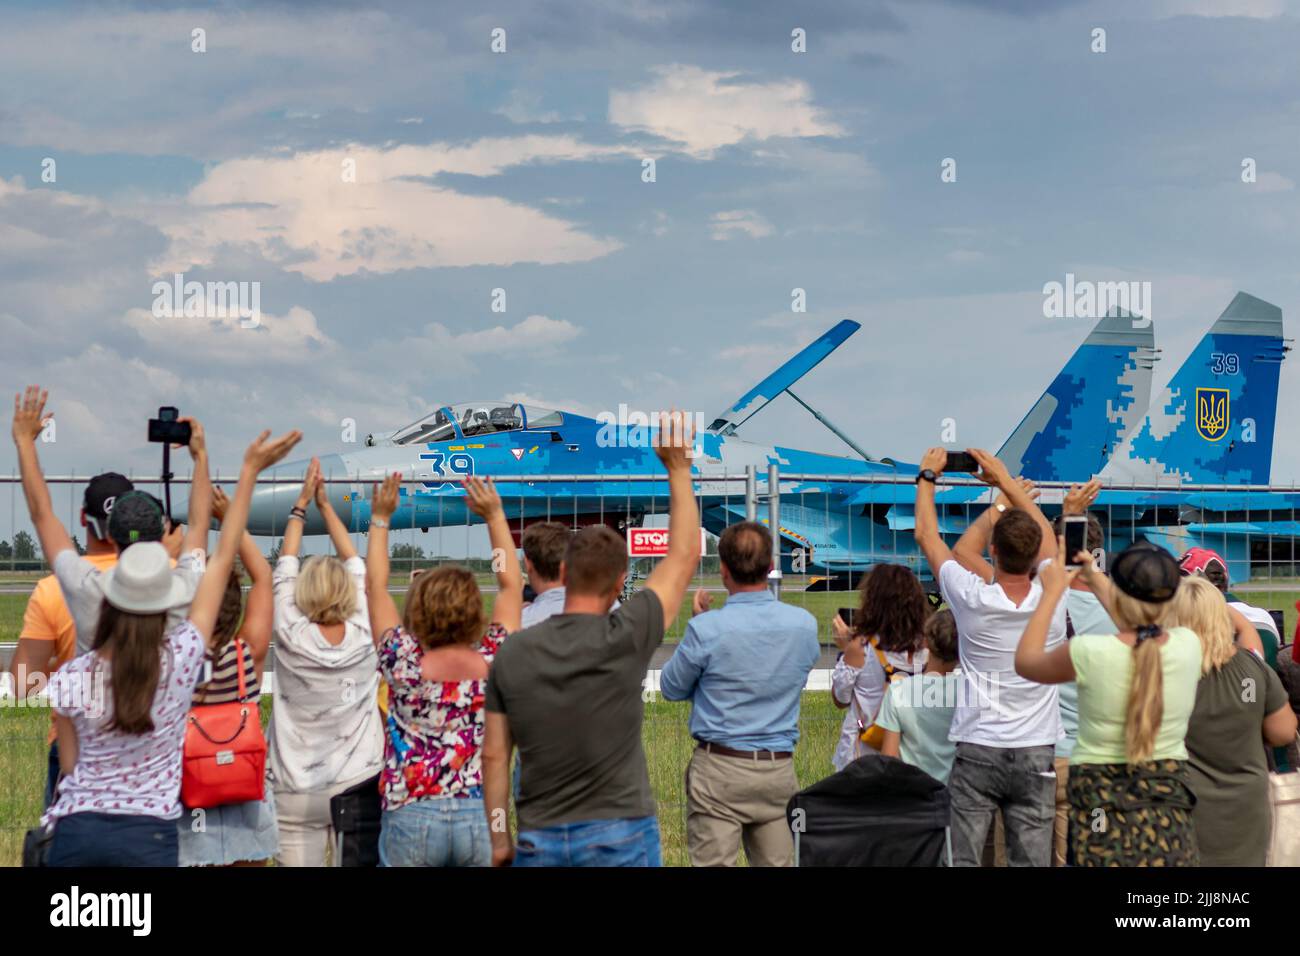 SIAULIAI / LITUANIE - 27 juillet 2019: Les spectateurs saluent et se pressent la main à l'aviation ukrainienne Sukhoi su-27 avion de chasse au sol Banque D'Images